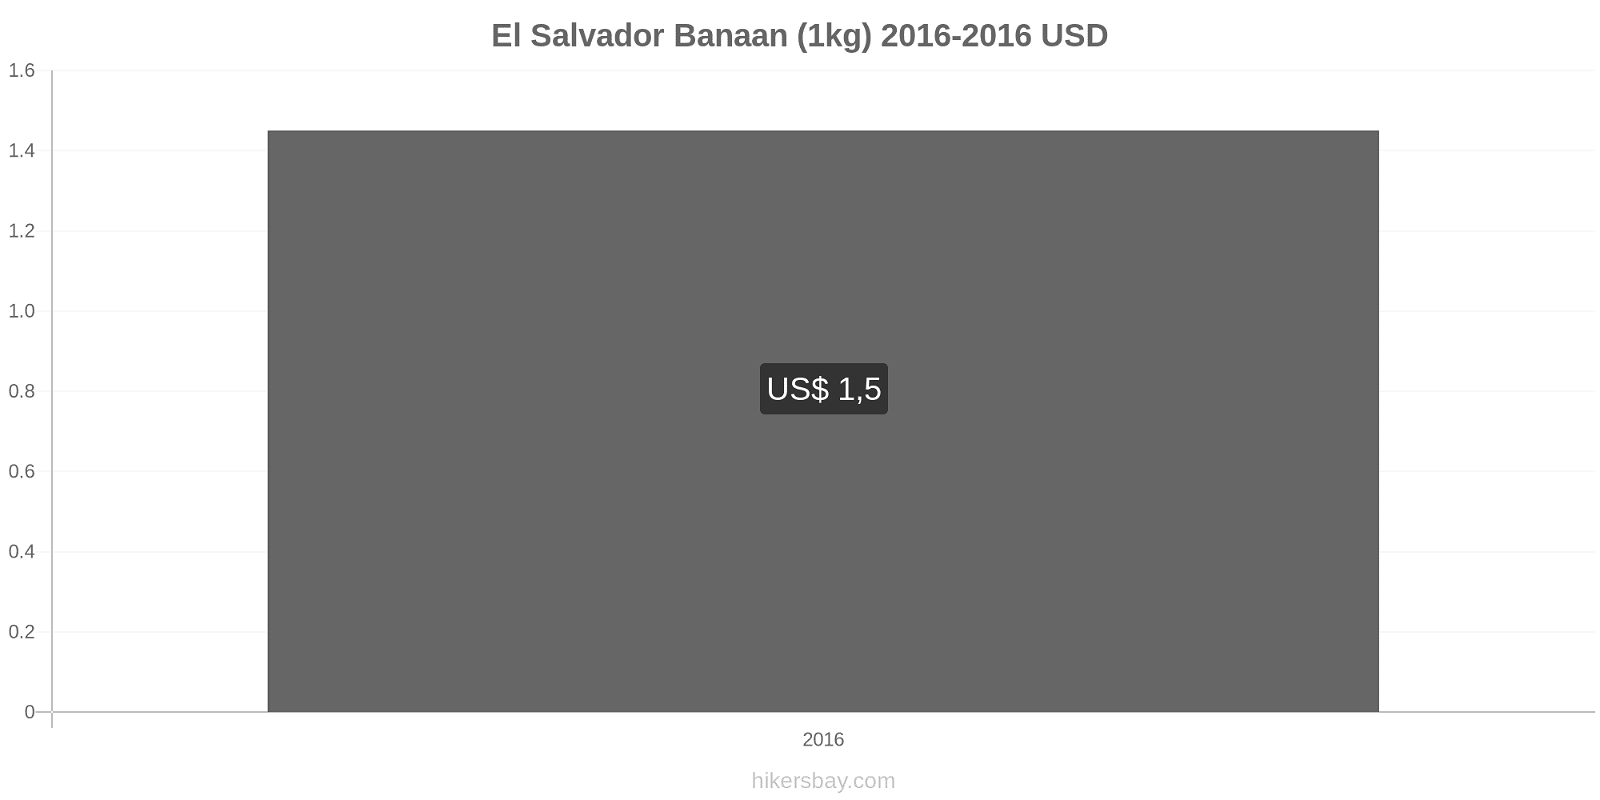 El Salvador prijswijzigingen Bananen (1kg) hikersbay.com